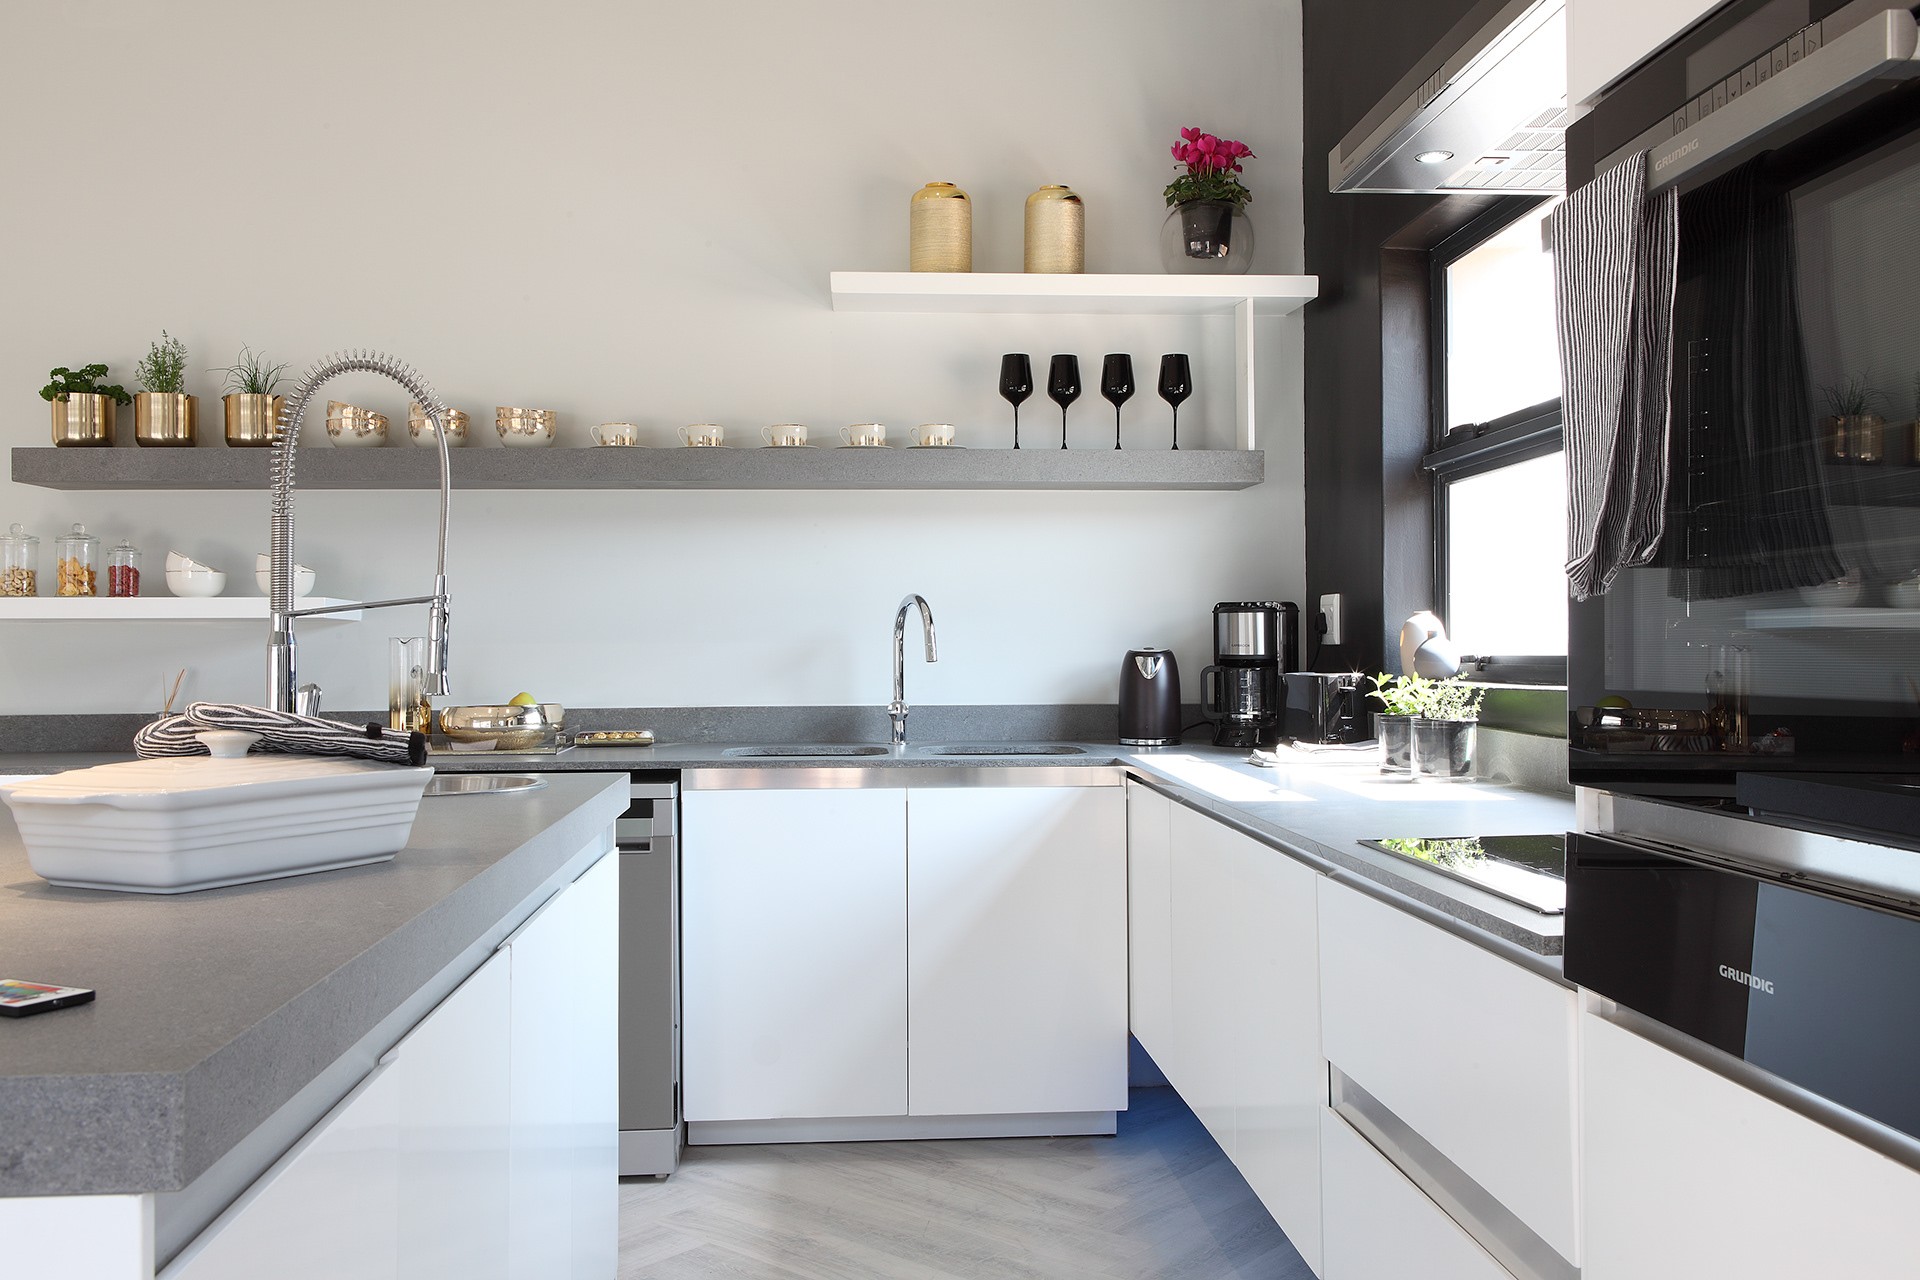 Décor do dia: cozinha com parede lousa e decoração em preto e branco (Foto: Divulgação)